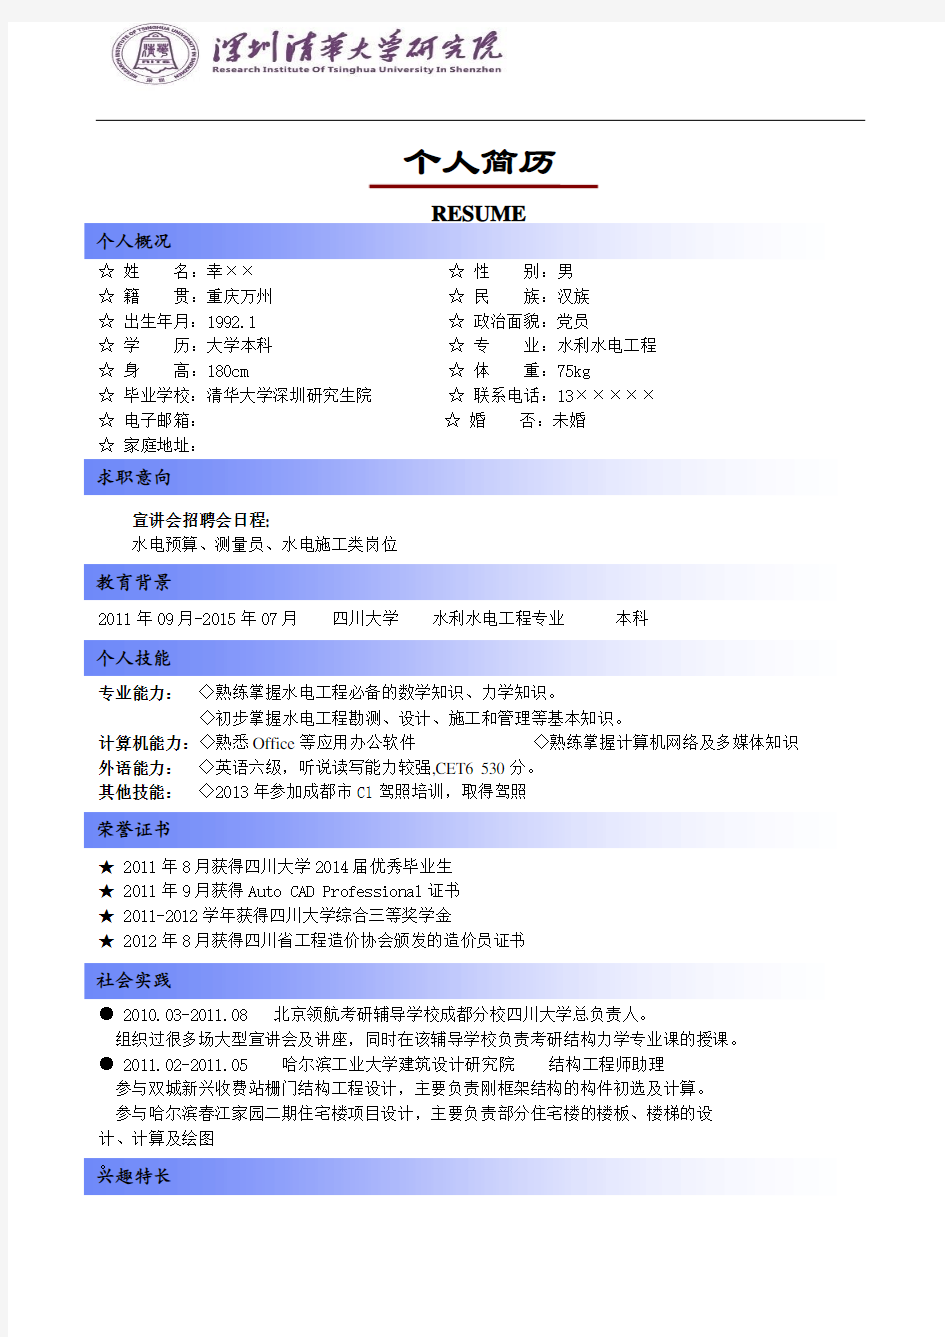 清华大学深圳研究生院简历模板(版式1+蓝色标题+logo)